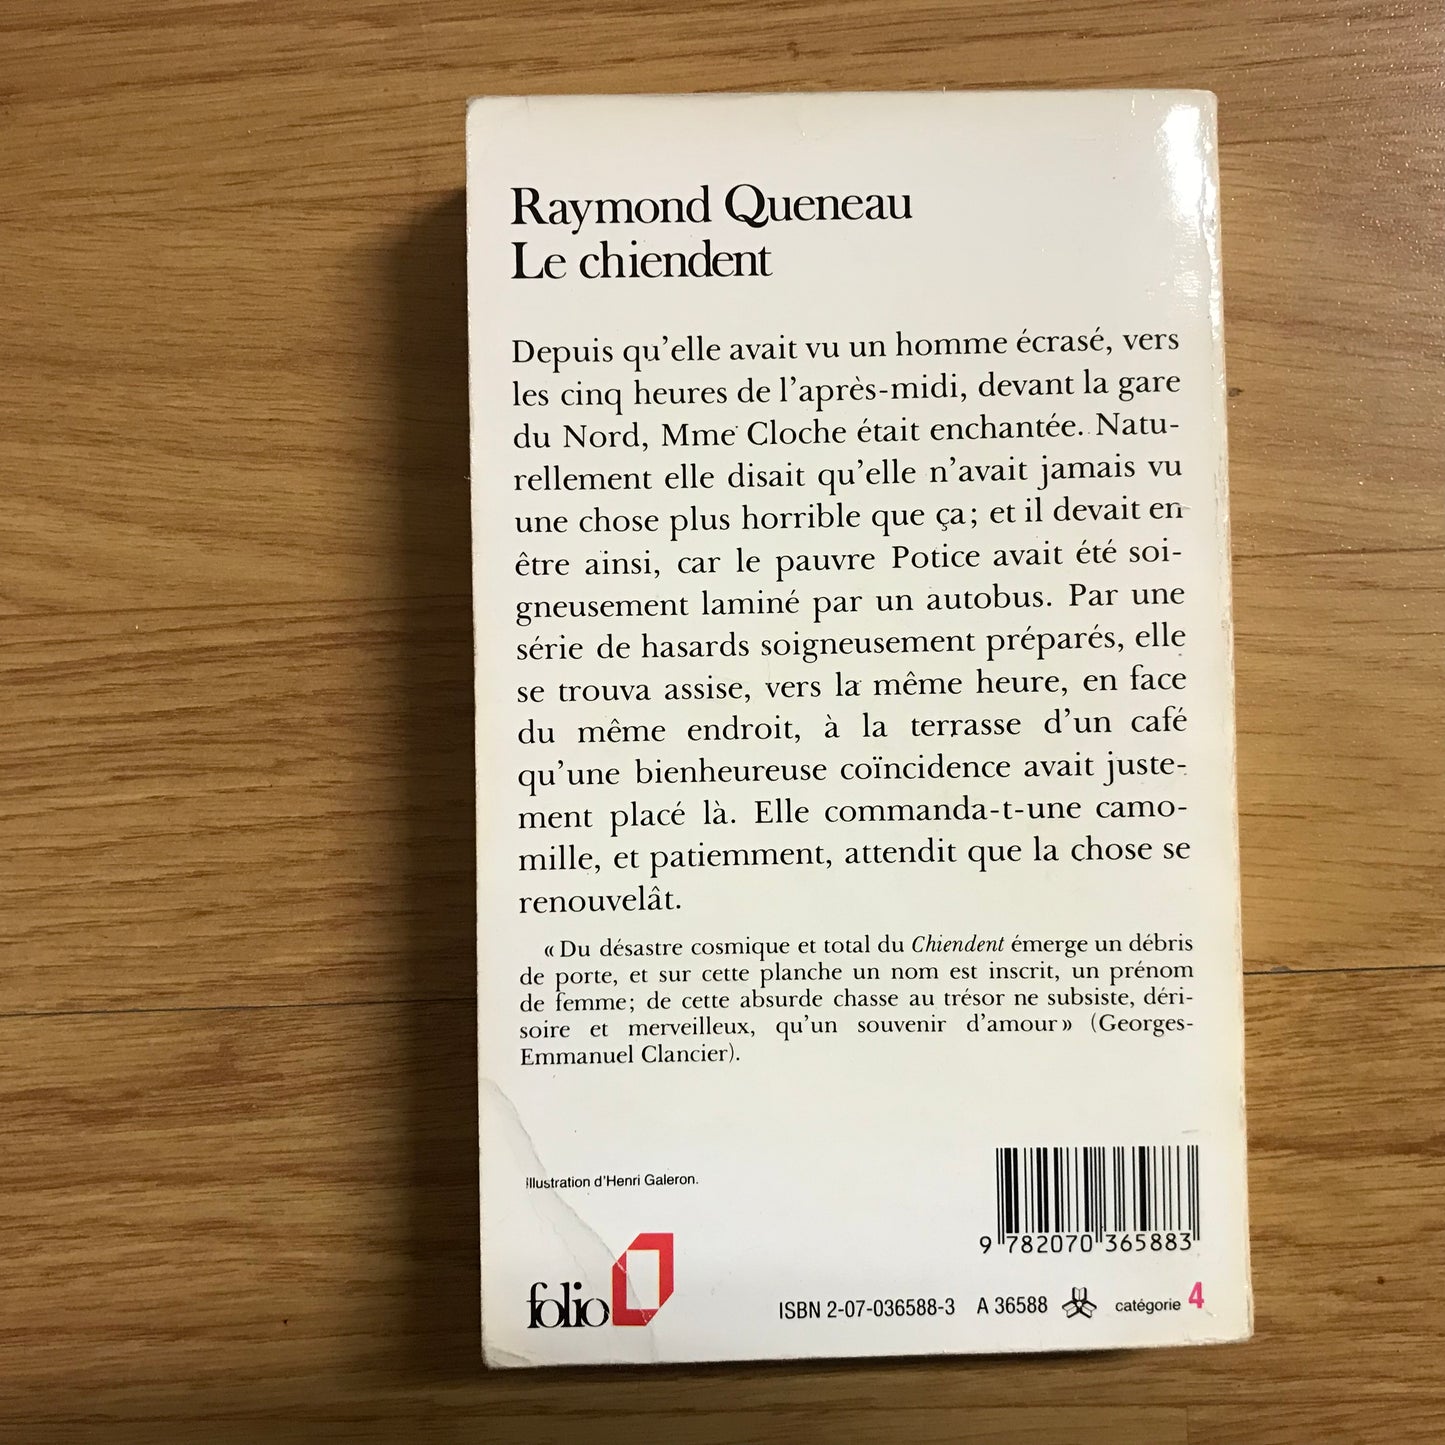 Queneau, Raymond - Le chiendent